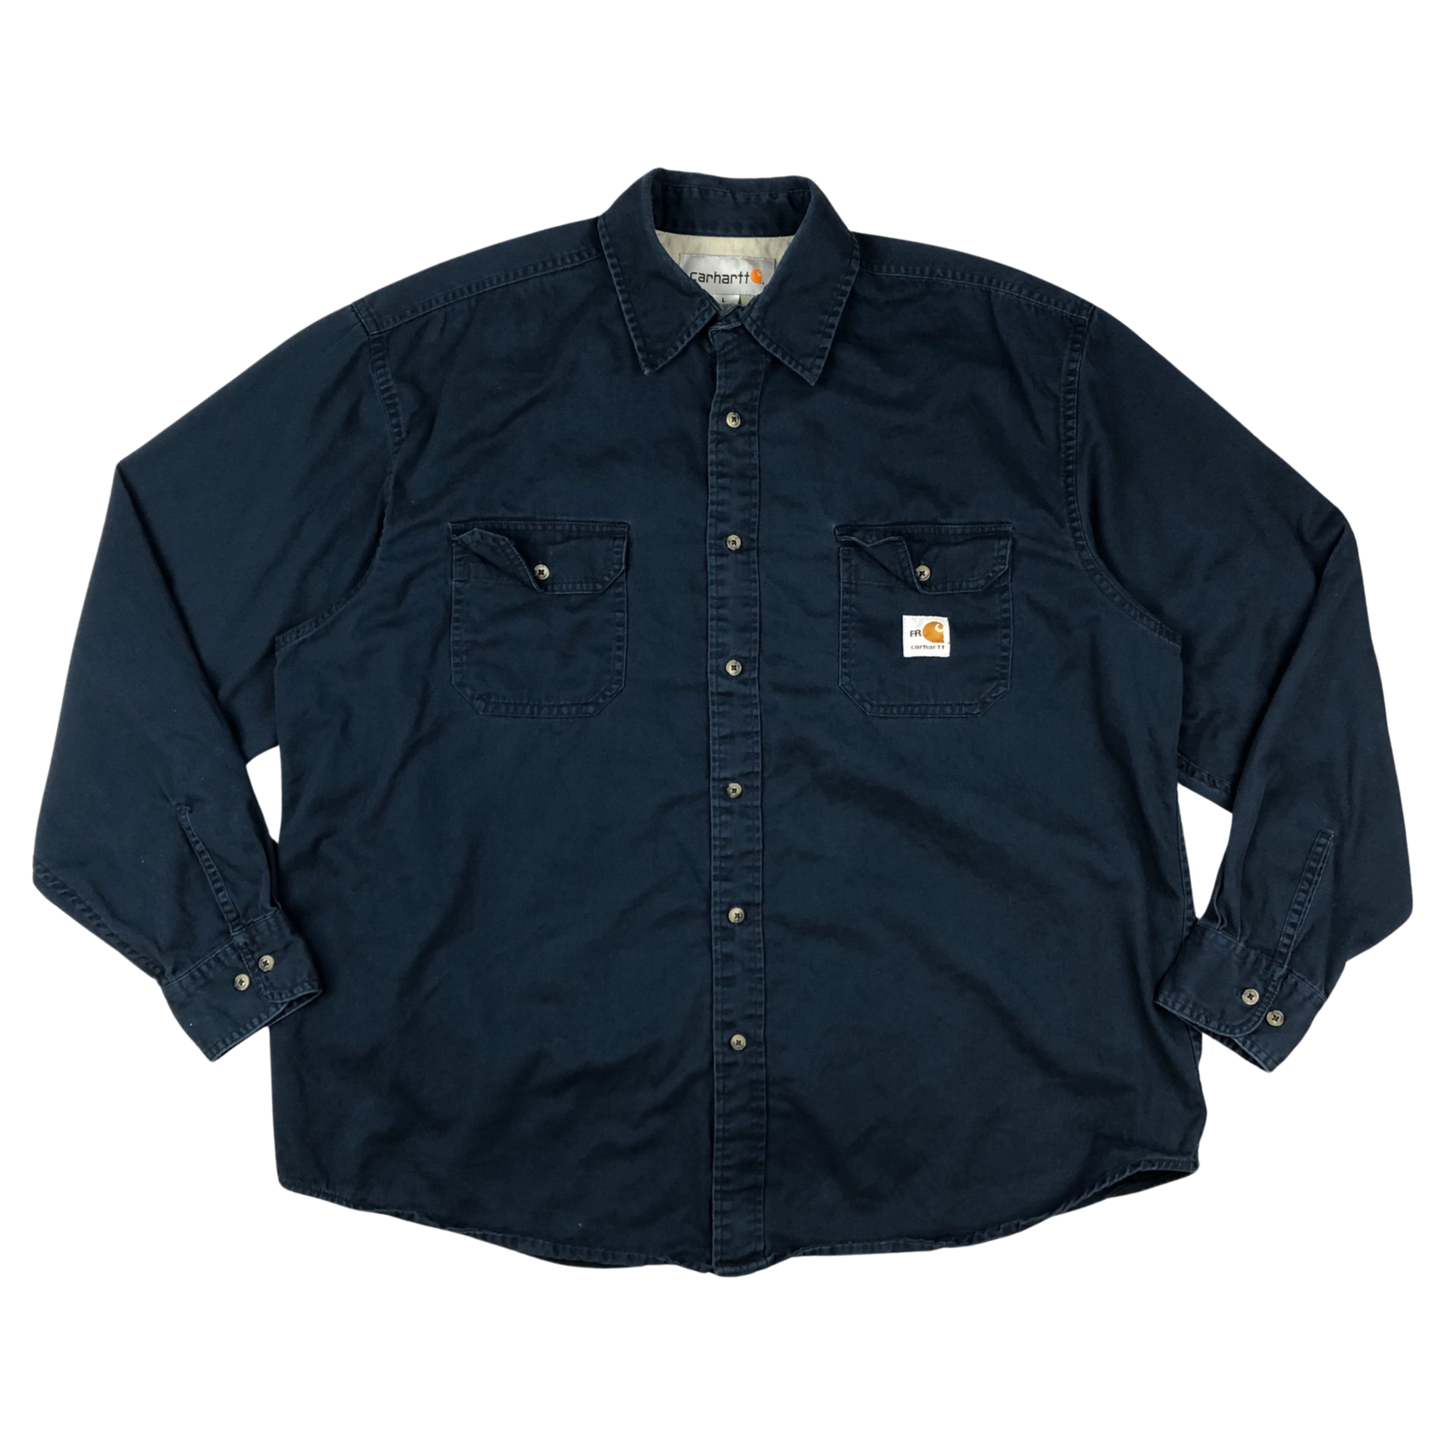 Vintage Carhartt Fire Resistant Blue Cotton Shirt Black XL